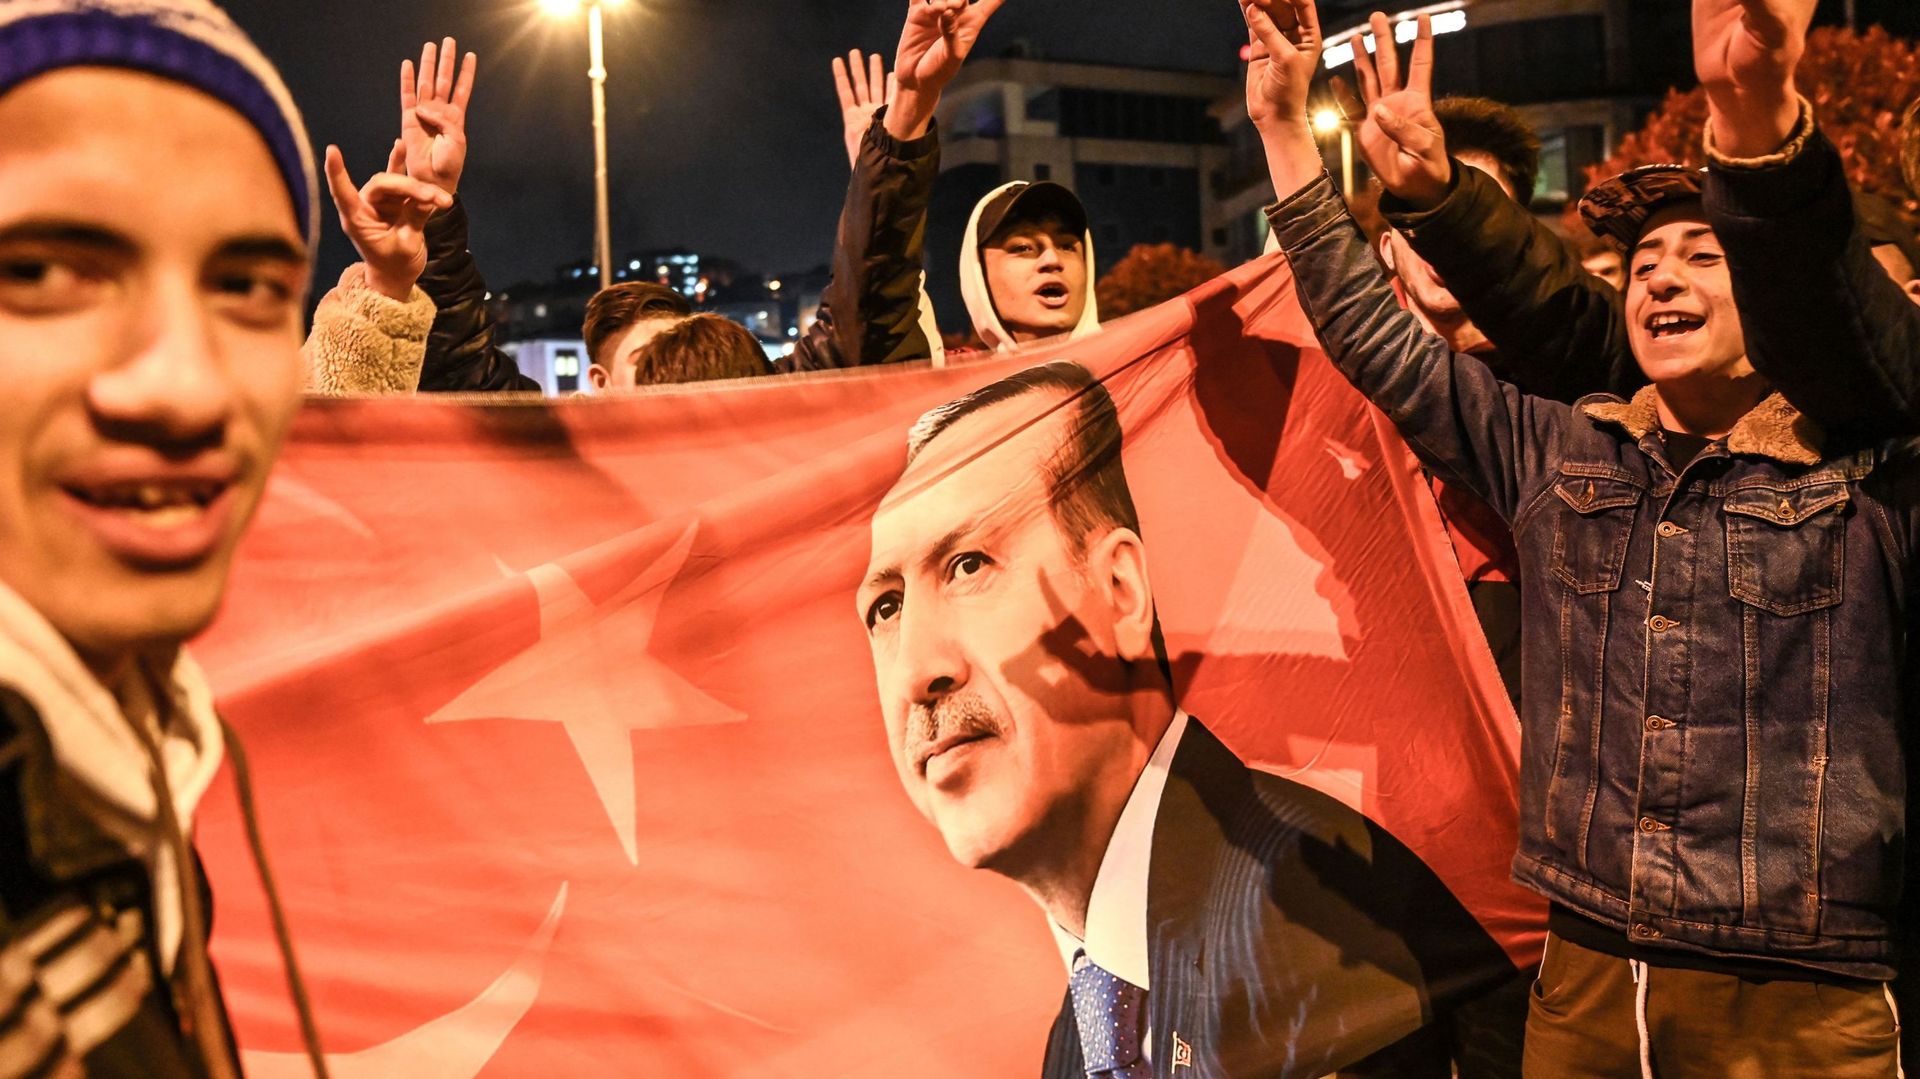 Municipales en Turquie: l'opposition remporte deux villes importantes (Istanbul et Ankara)